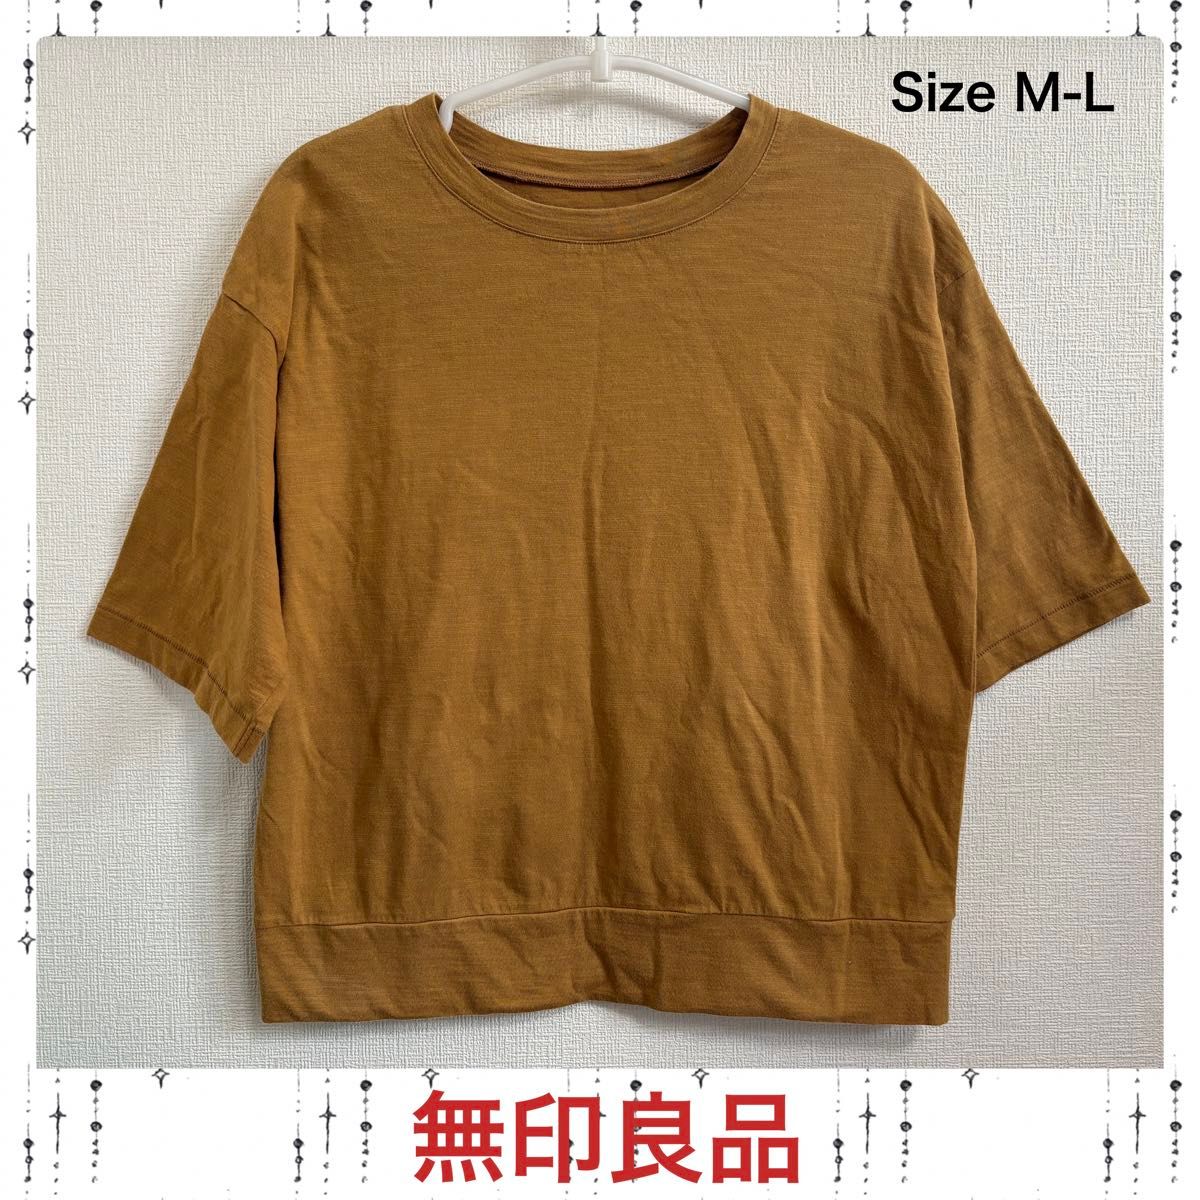 無印良品 Tシャツ/size M-L マスタード